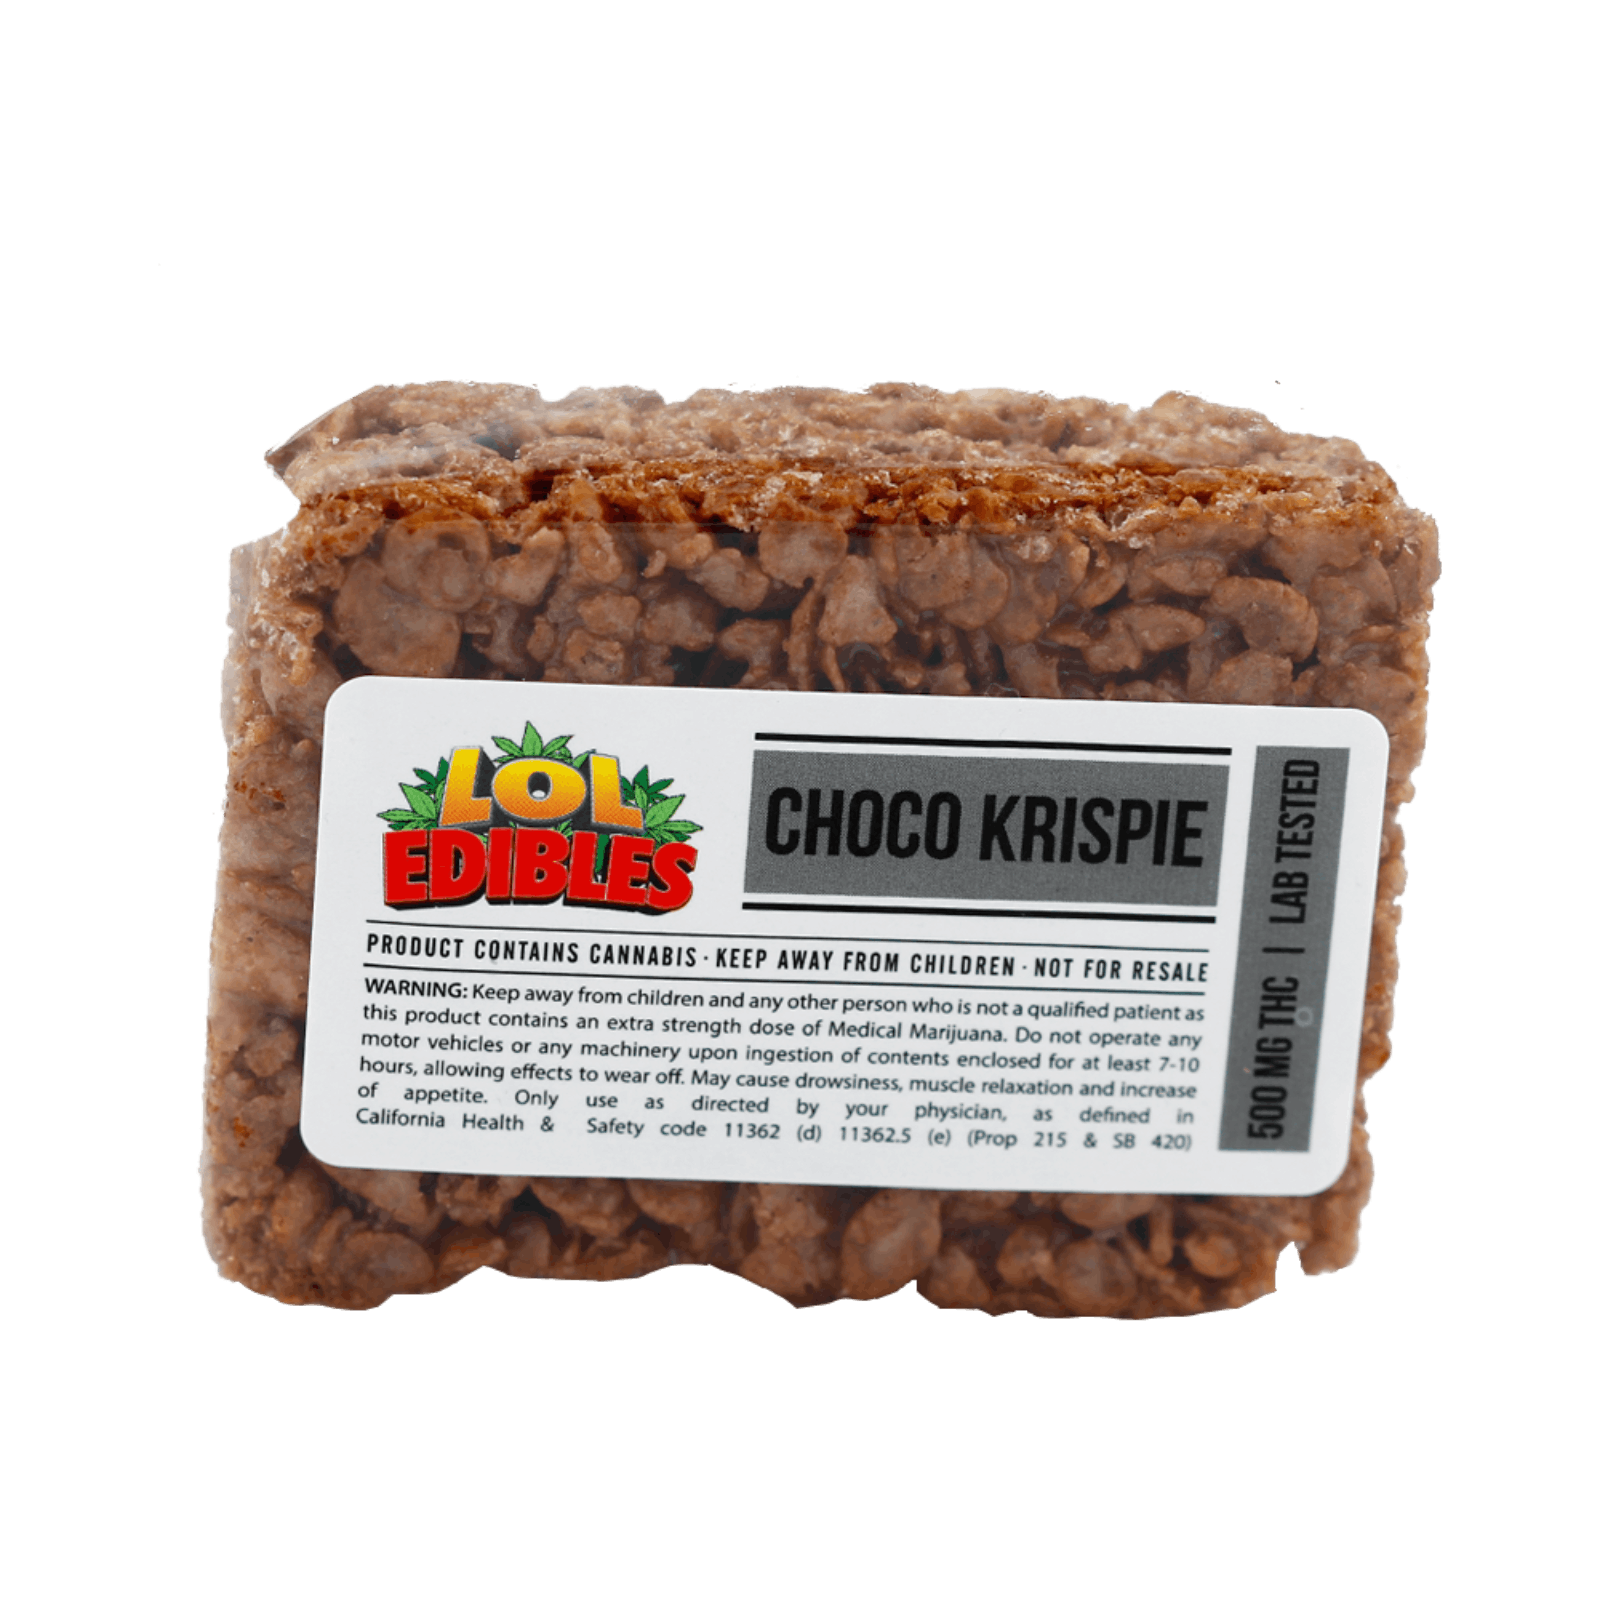 edible-lol-krispie-choco-krispie-500-mg